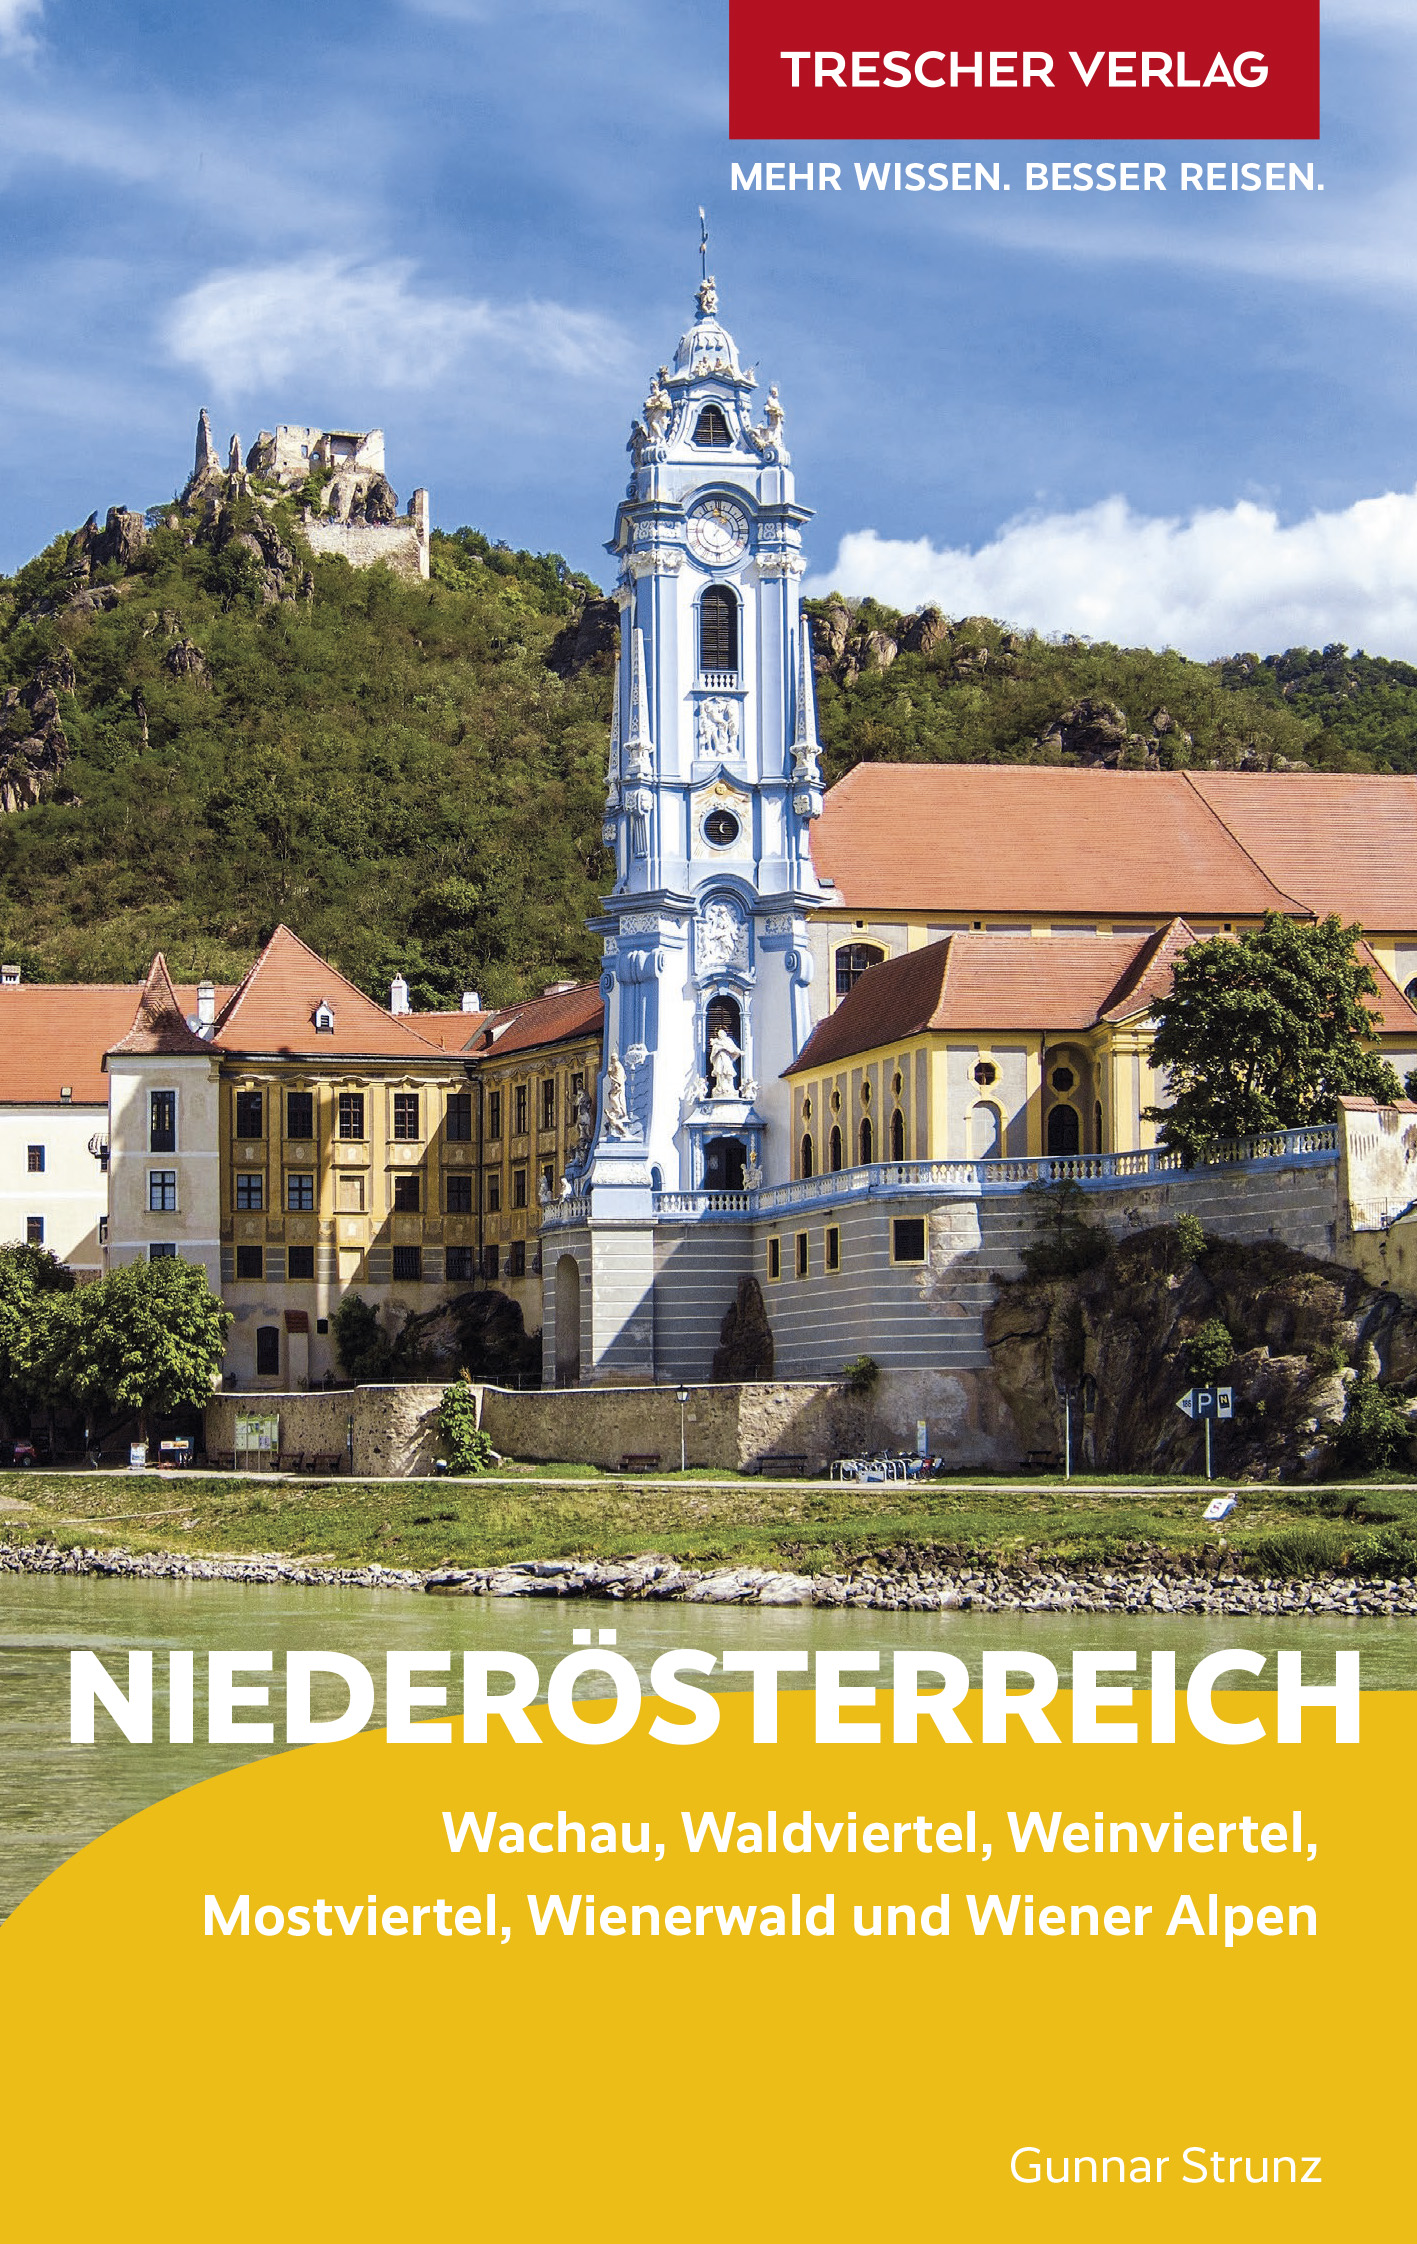 Online bestellen: Reisgids Niederösterreich | Trescher Verlag